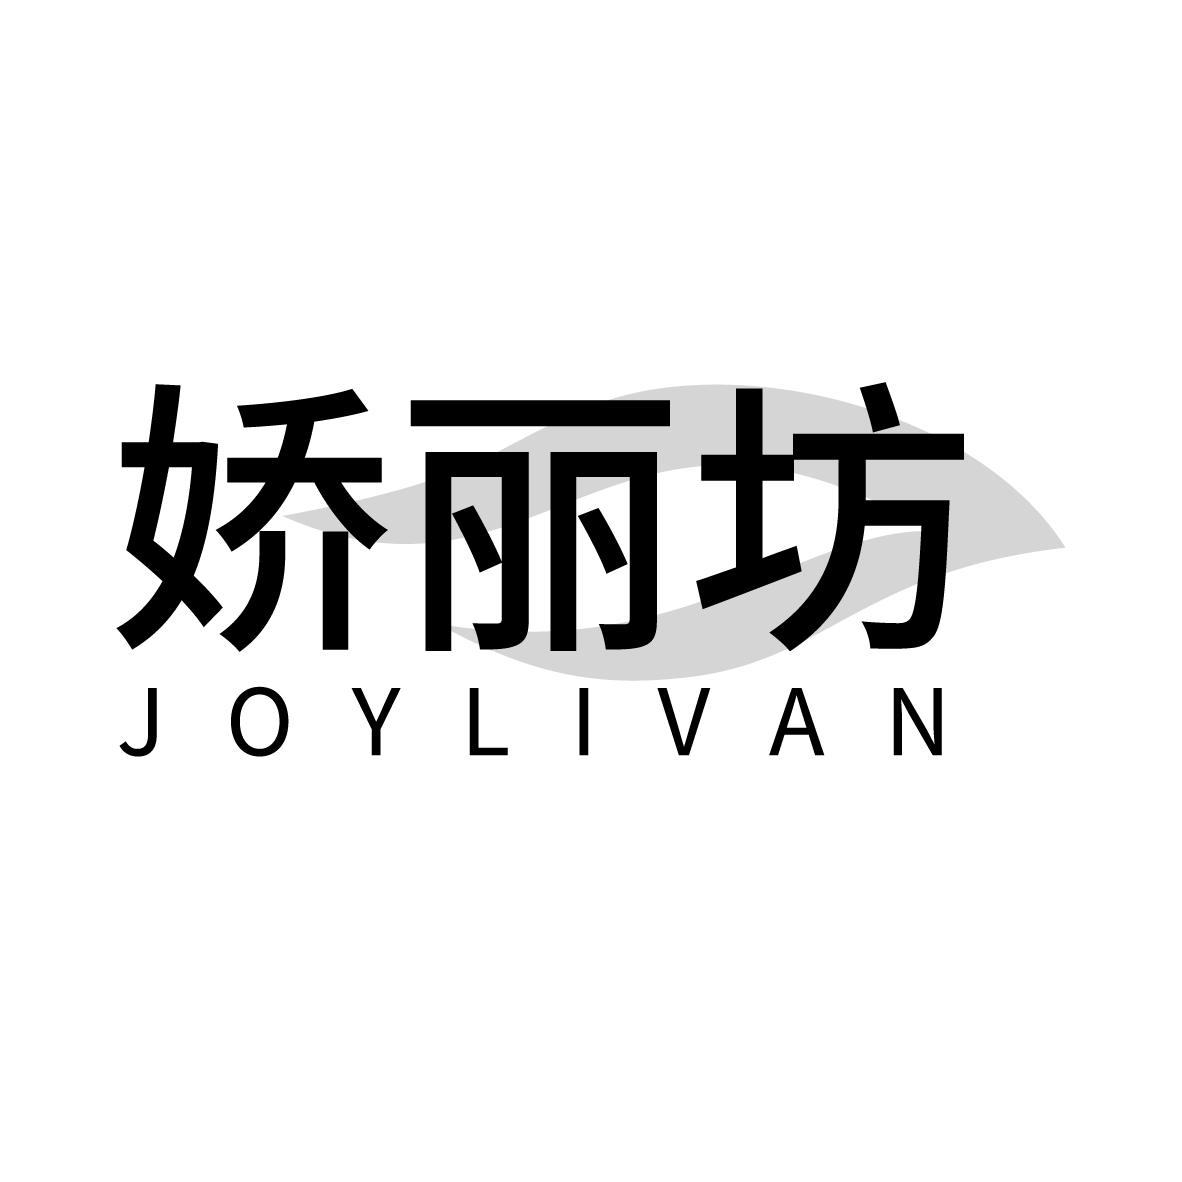  JOYLIVAN